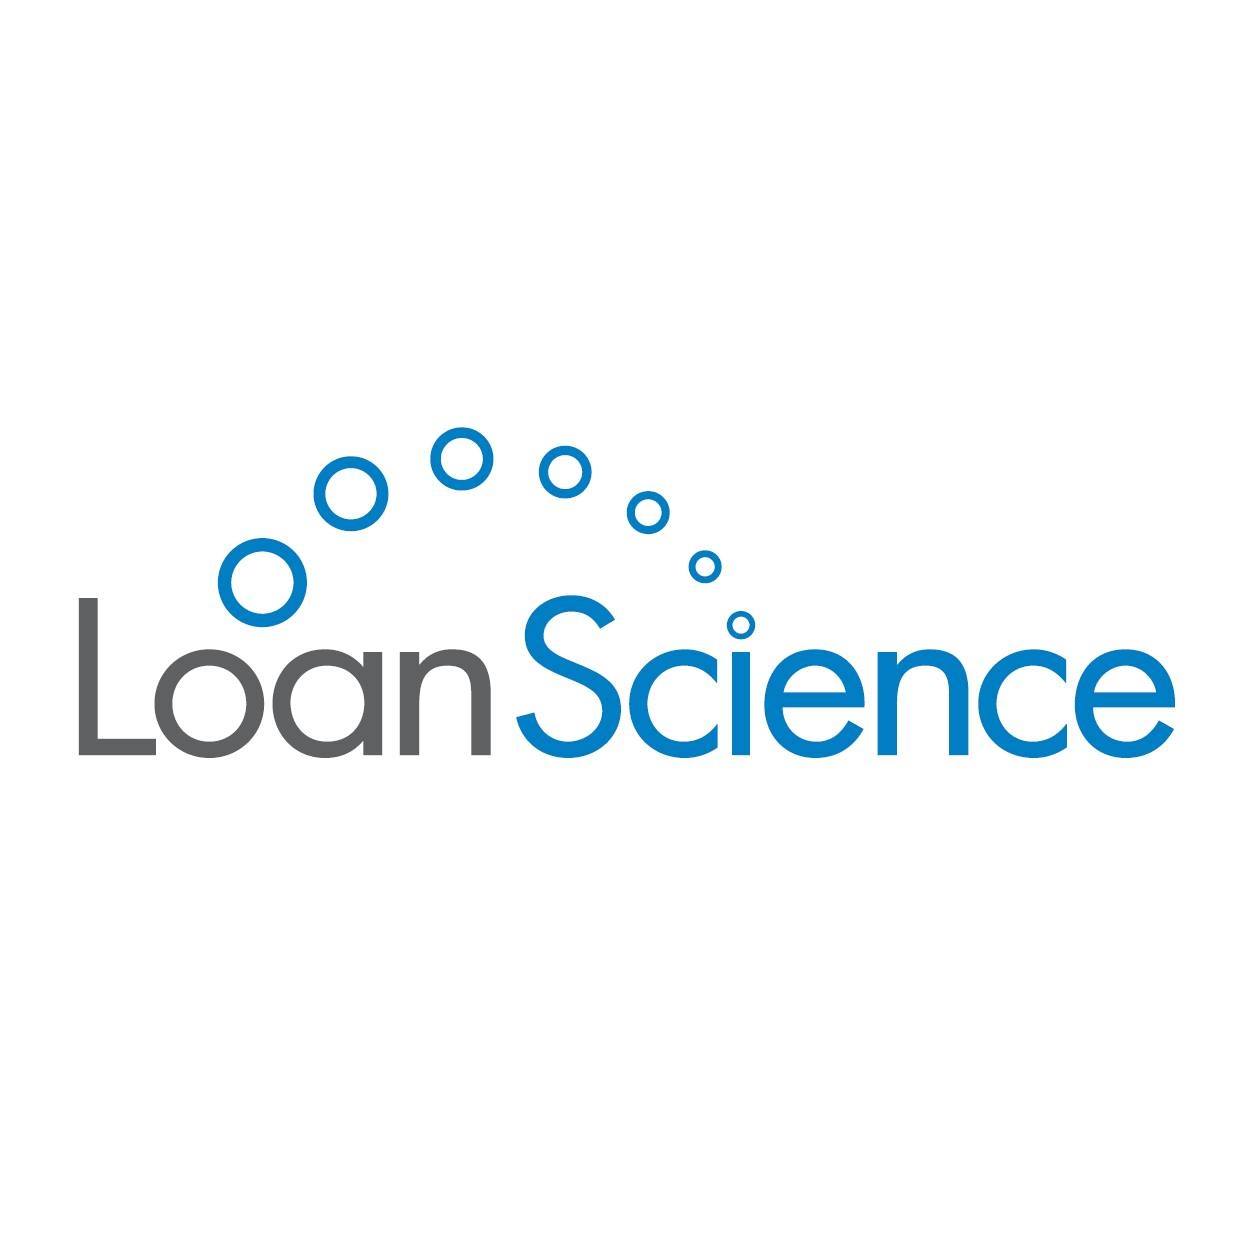 Loan Science